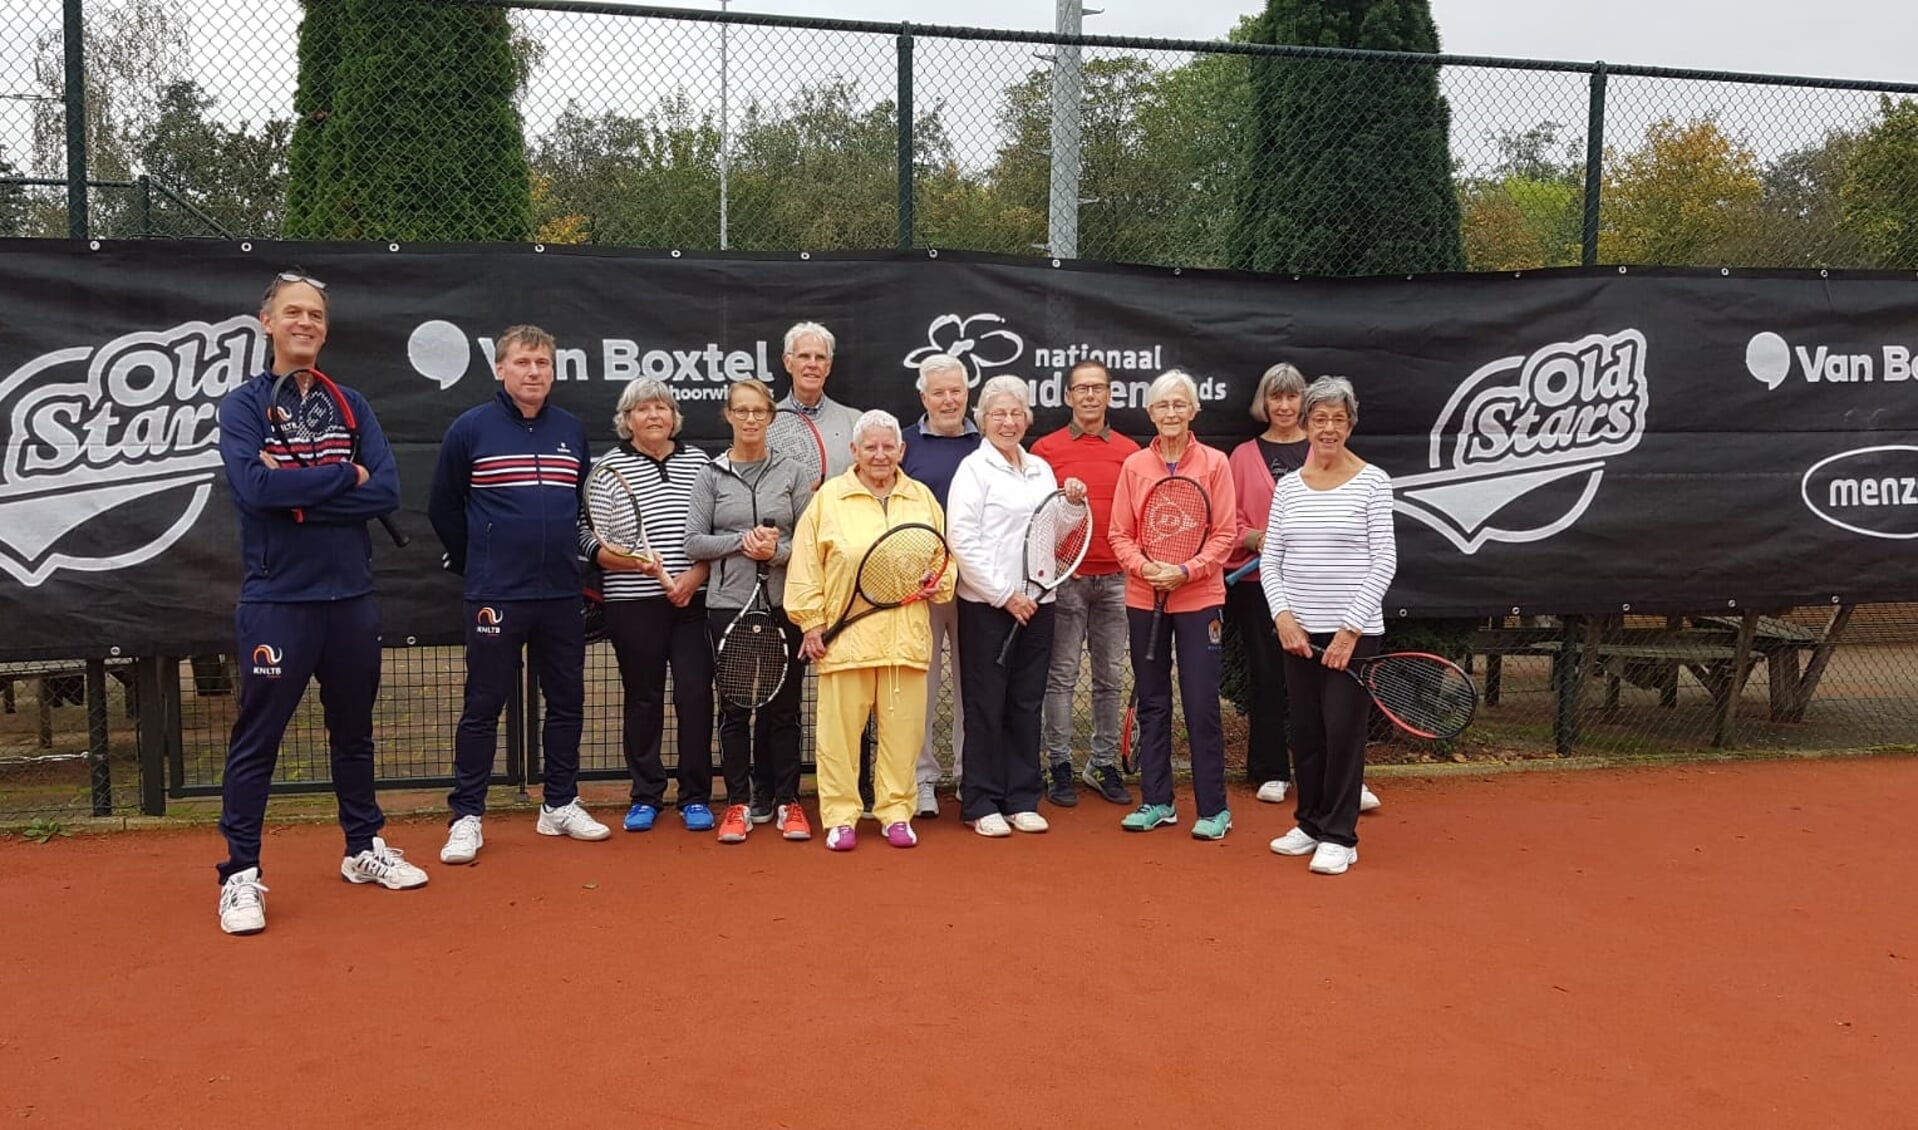 De deelnemers aan de Old Star Tennis Clinic.